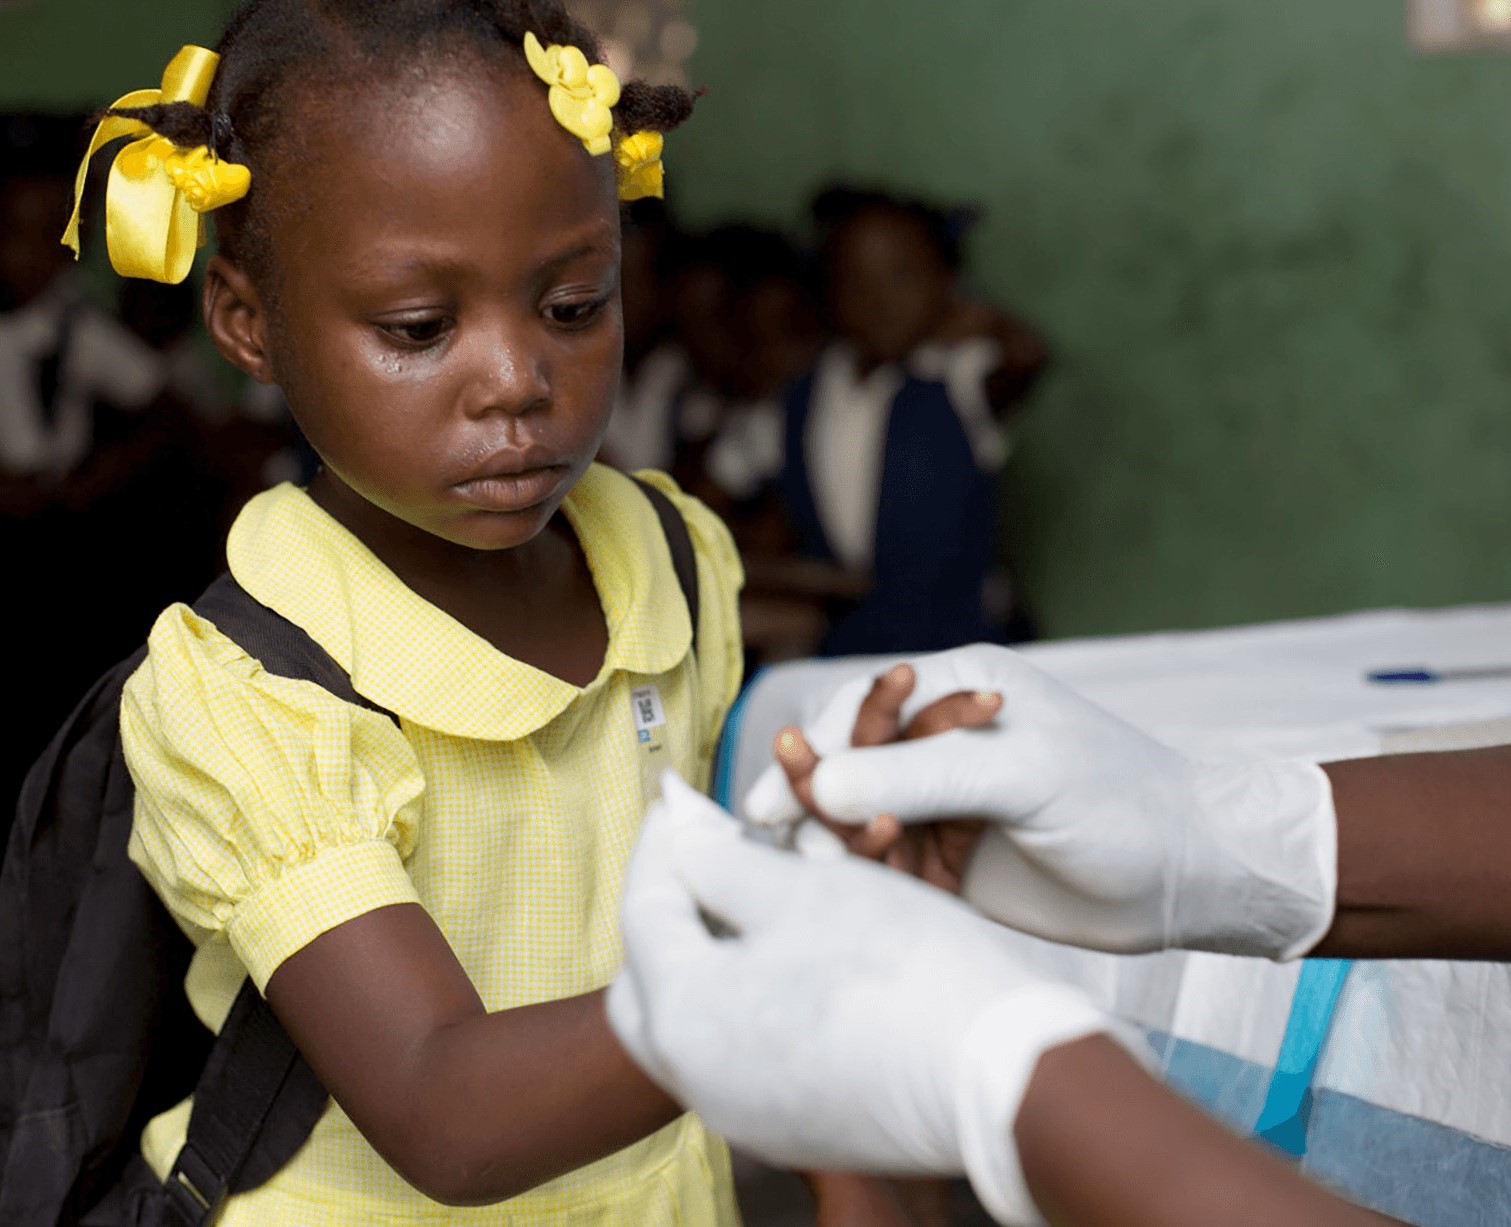 اليونيسيف تؤكد إلتزامها بصحة الأطفال من خلال دعم تطعيم أكثر من 460,000 طفل دون سن الثانية في ‫ليبيا خلال العام الماضي .